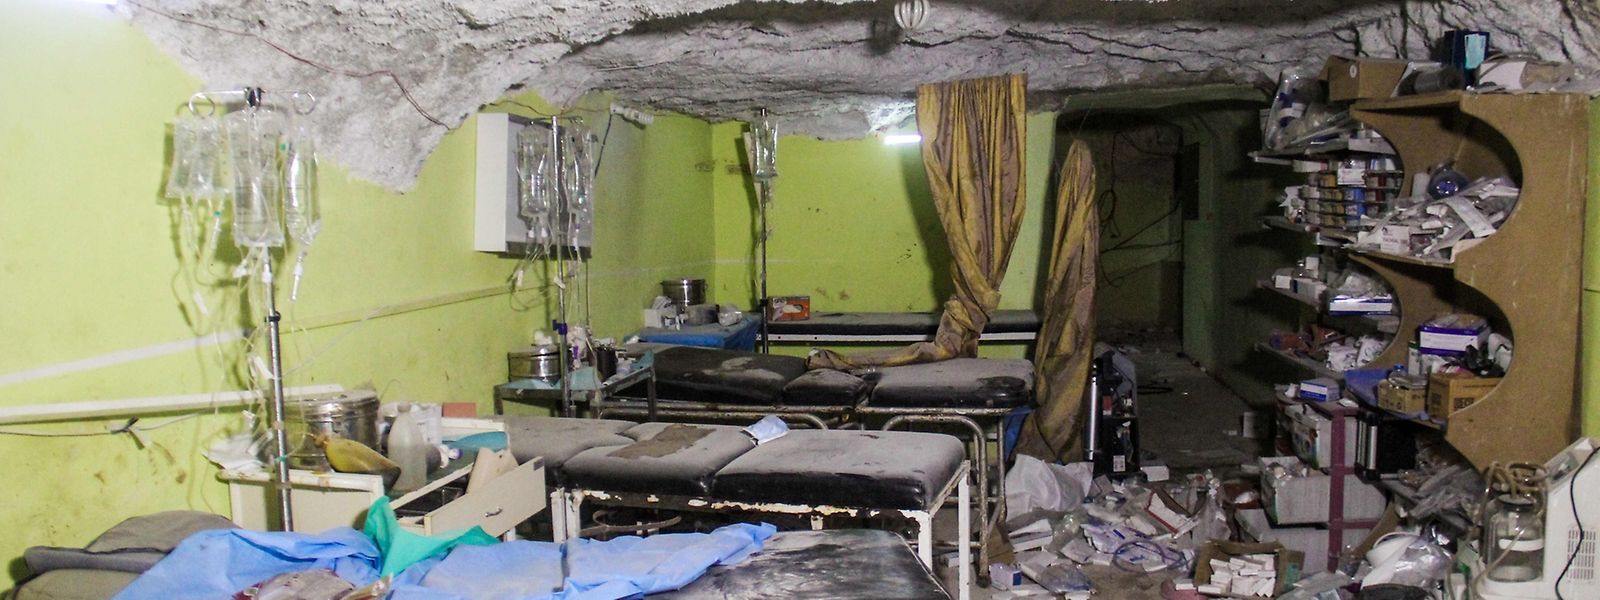 Nach der Giftgasattacke griffen Jets der Luftwaffe auch das örtliche Krankenhaus von Chan Scheichun an - so die Version der Syrischen Beobachtungsstelle für Menschenrechte.